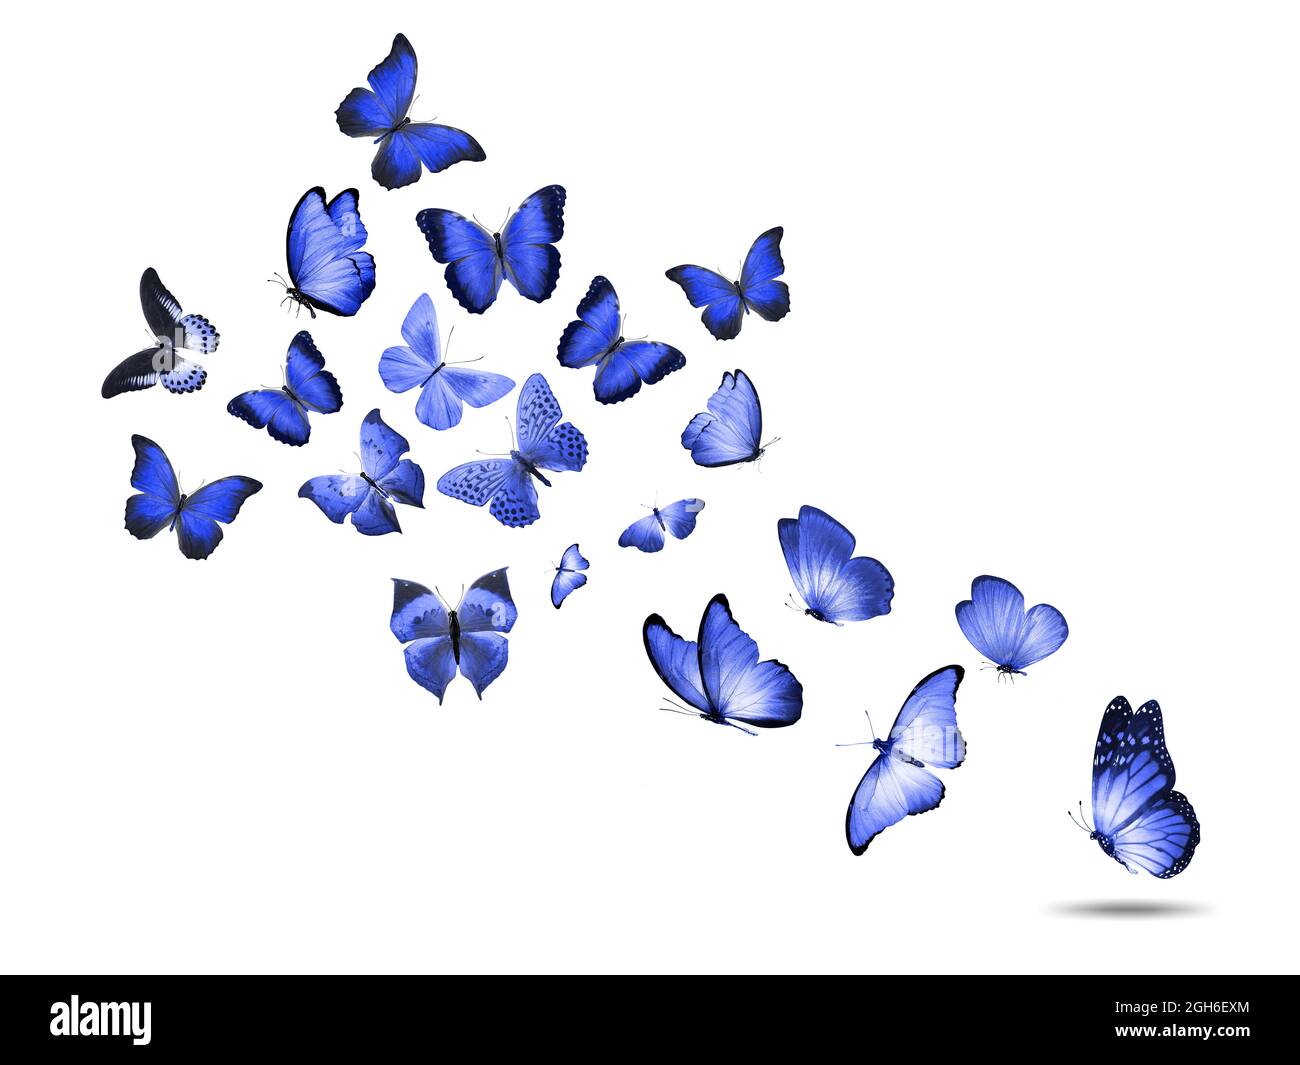 Farbige fliegende Schmetterlinge isoliert auf weißem Hintergrund